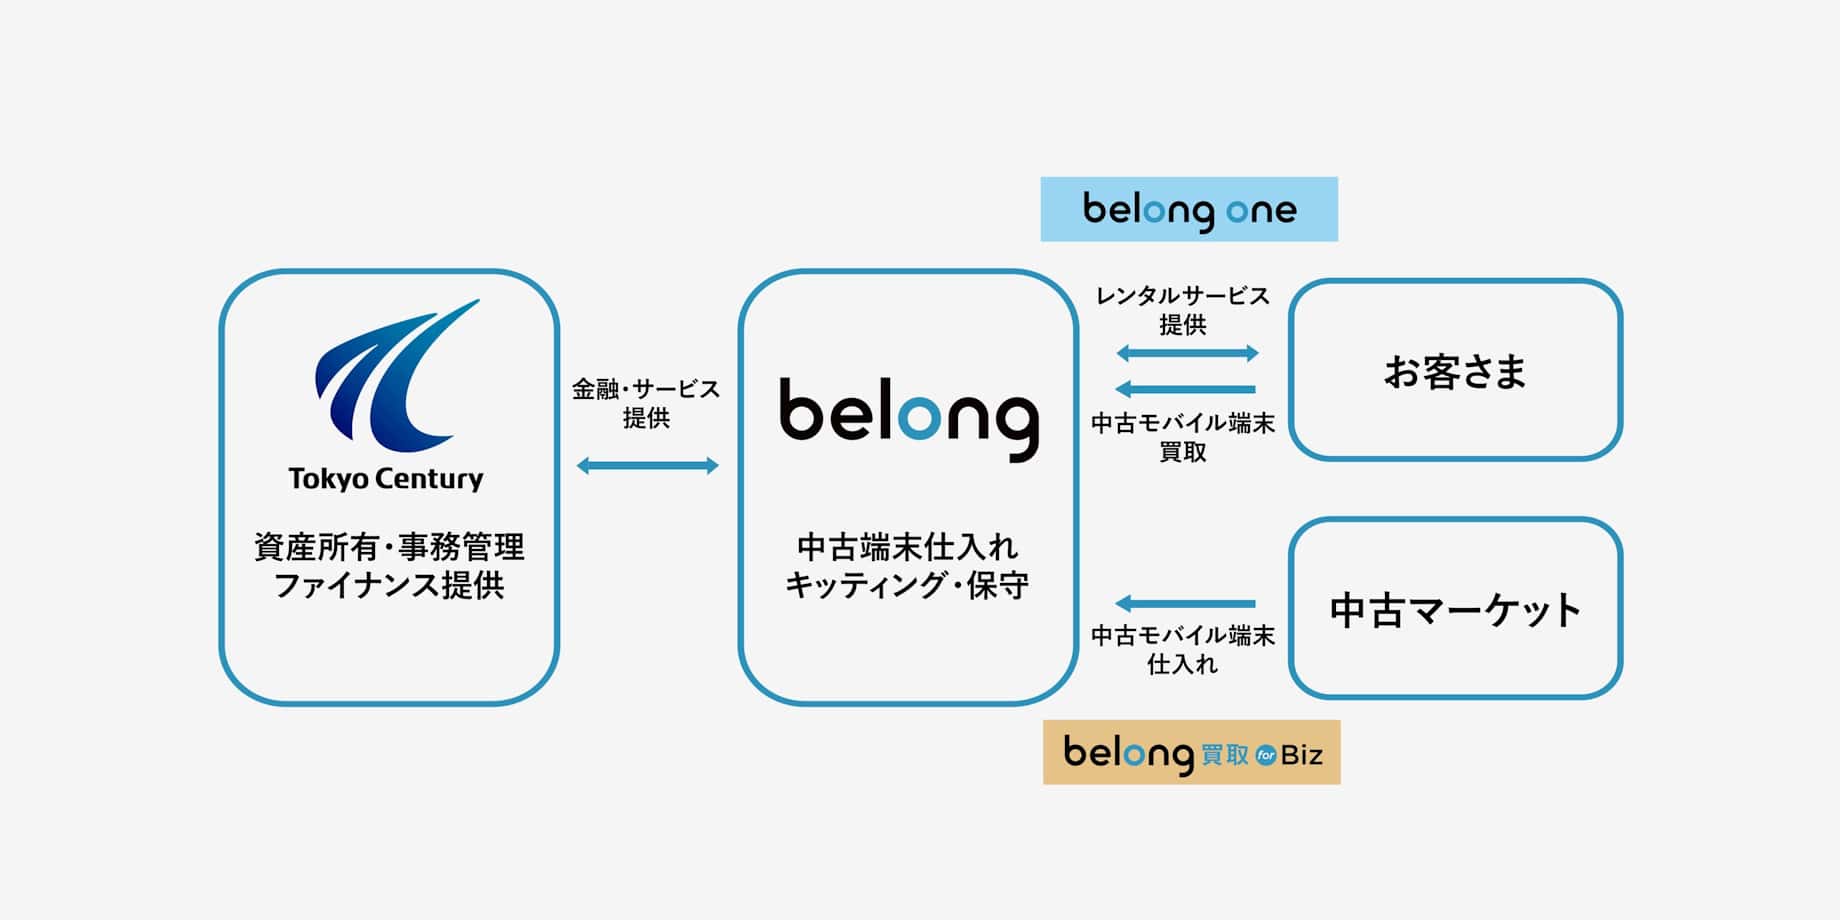 Relationship diagram between belong and Tokyo Century